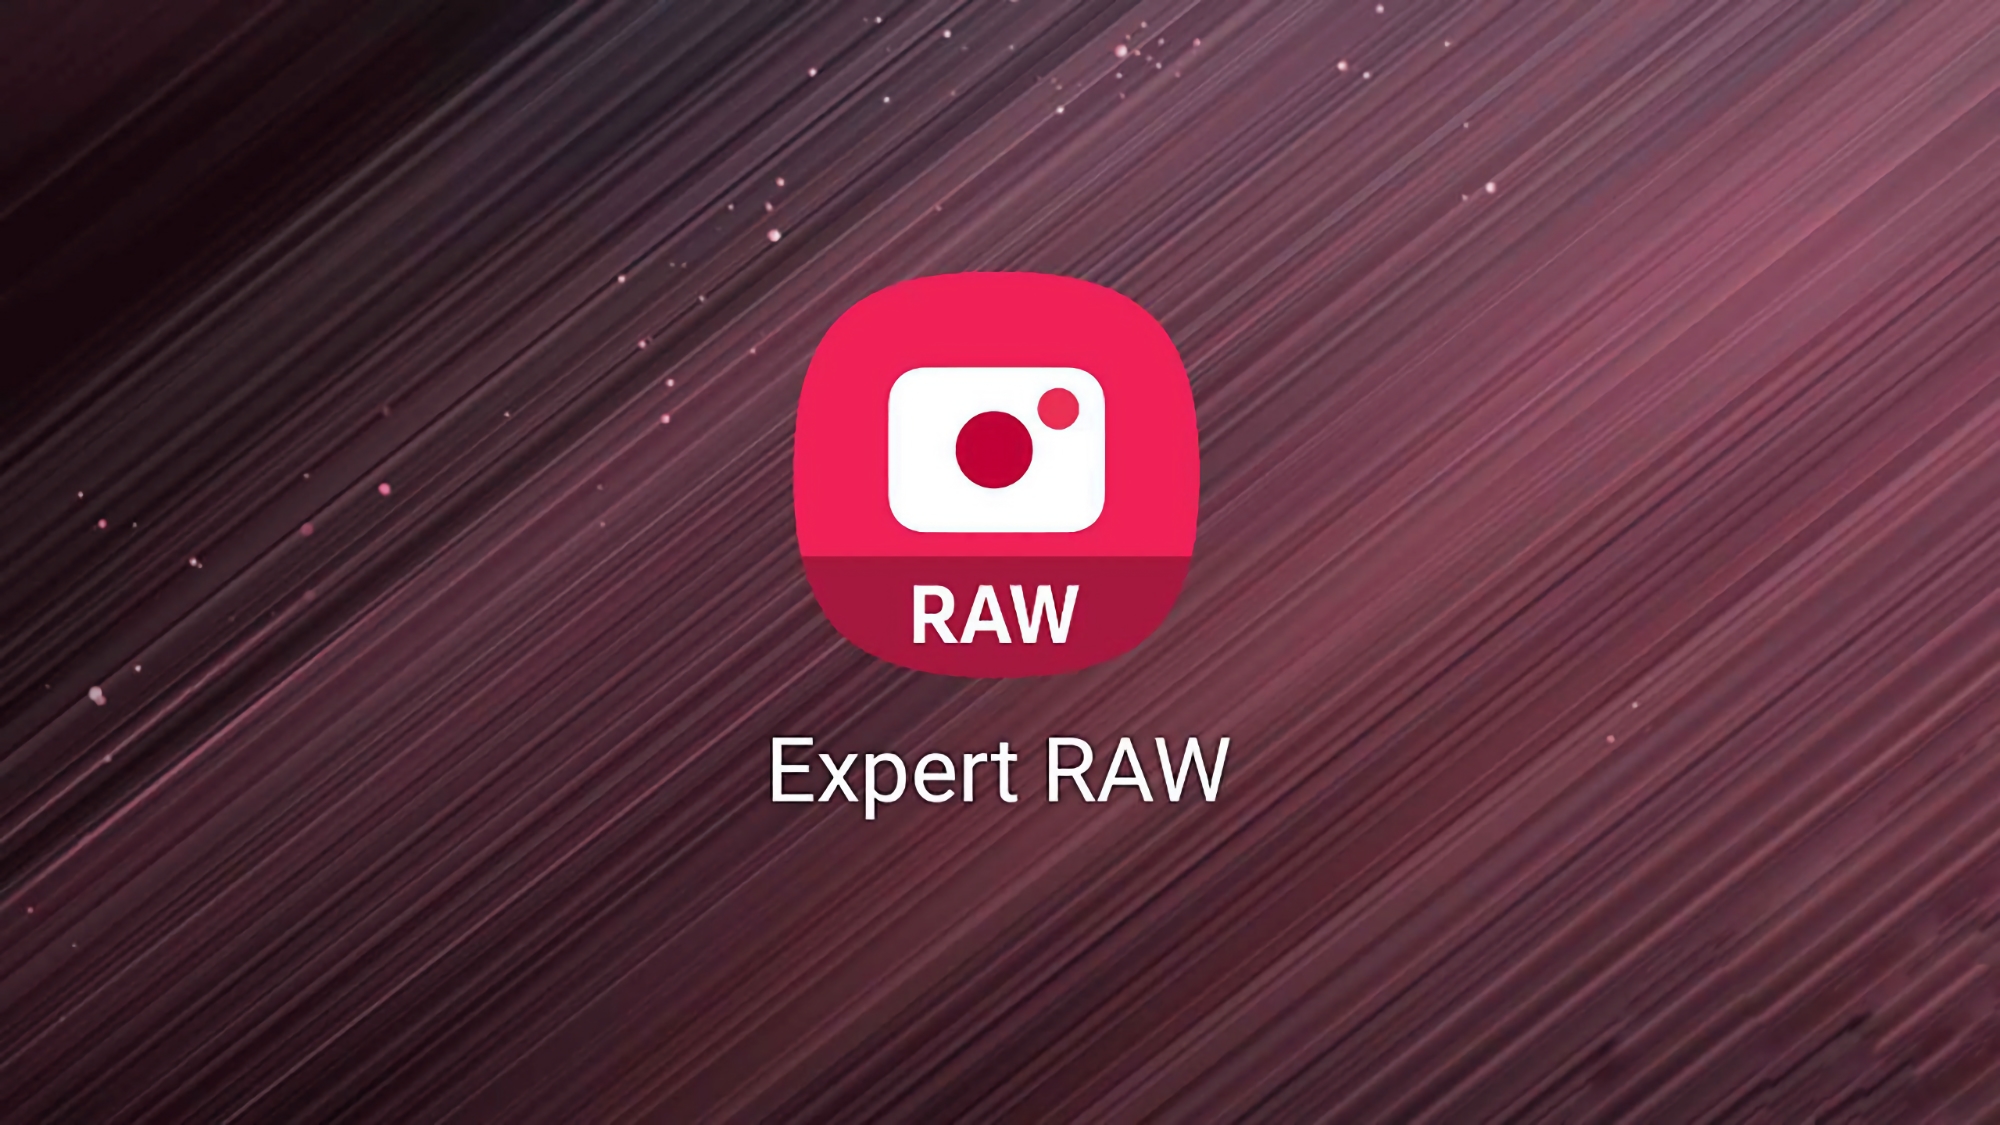 Samsung släpper uppdatering av Expert RAW-kameraappen: buggfixar och förbättrad bildkvalitet